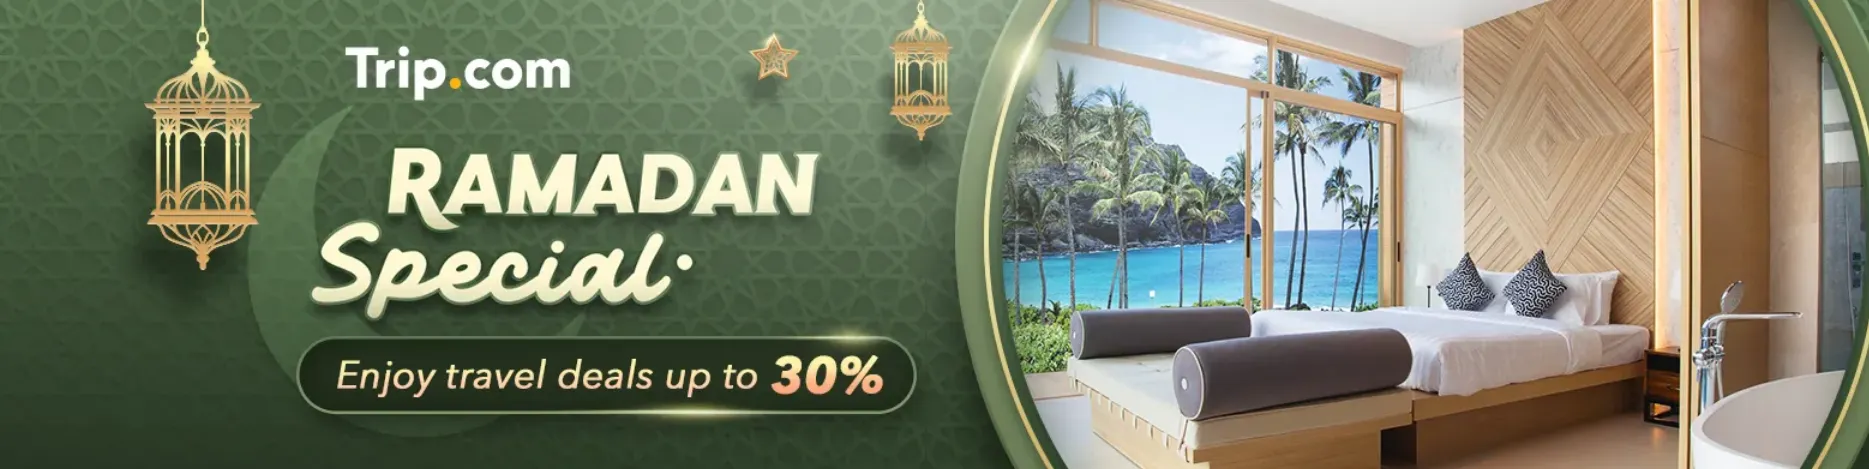 Trip.com Ramadan Special: Enjoy up to 30% Travel Deal!